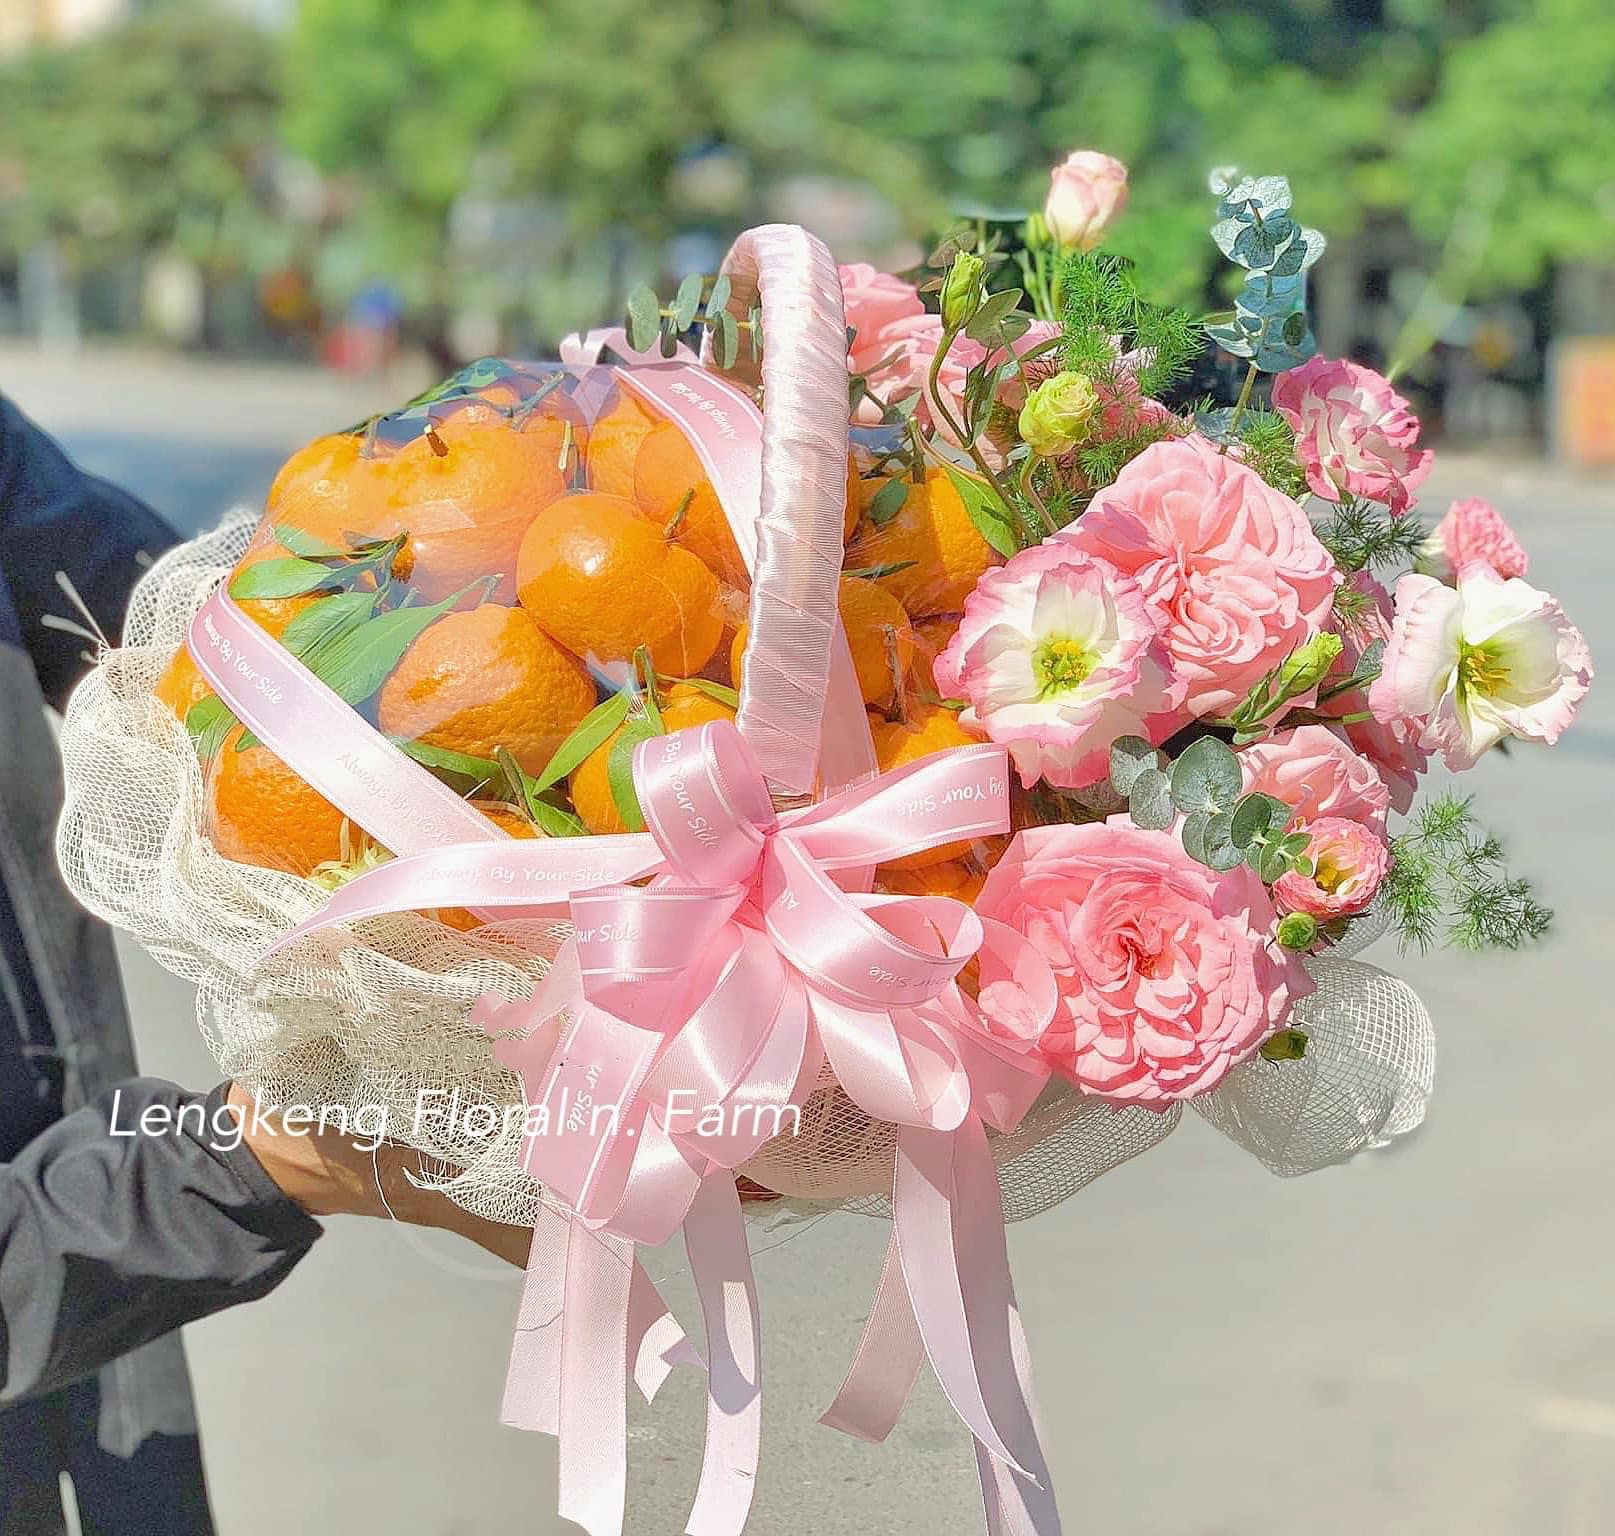 Leng Keng Floral - Cửa hàng hoa tươi Hải Dương chuyên cung cấp hoa với giá cực rẻ 